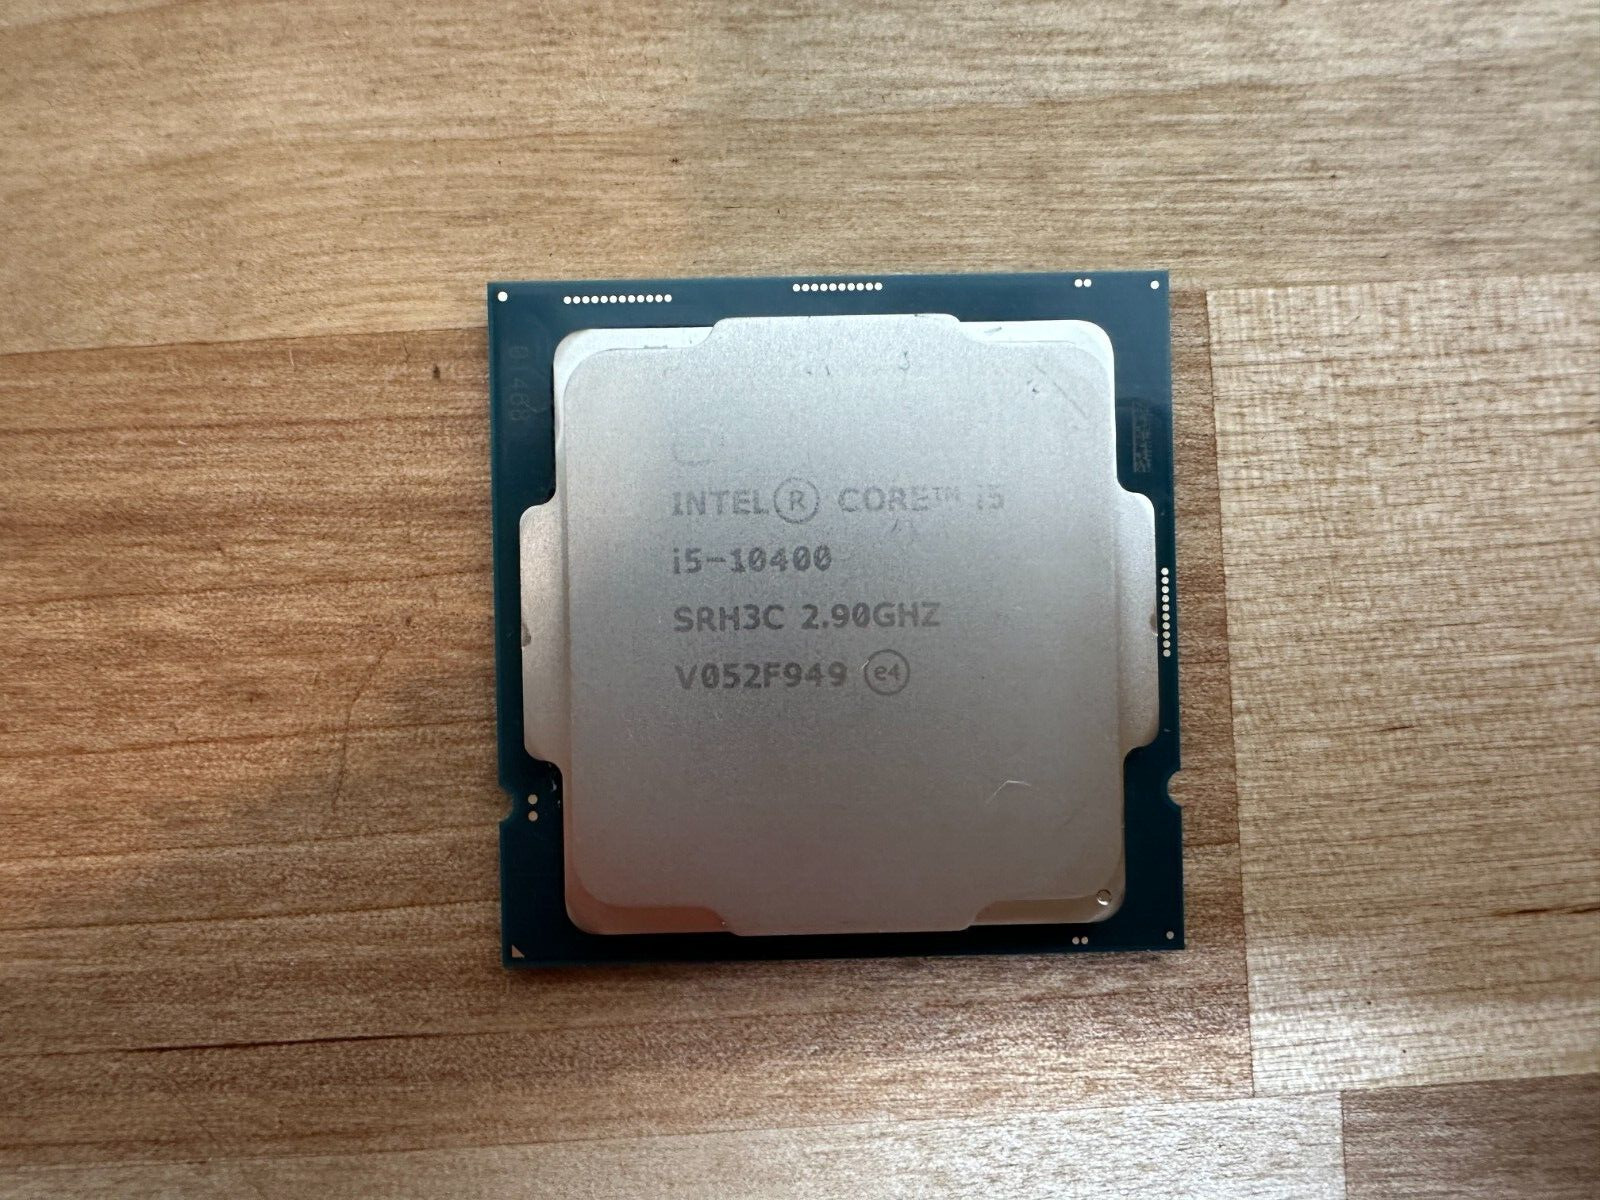 Intel Core i5-10400 SRH3C 2.90GHz 6-Core LGA1200 CPU Processor Tested Read